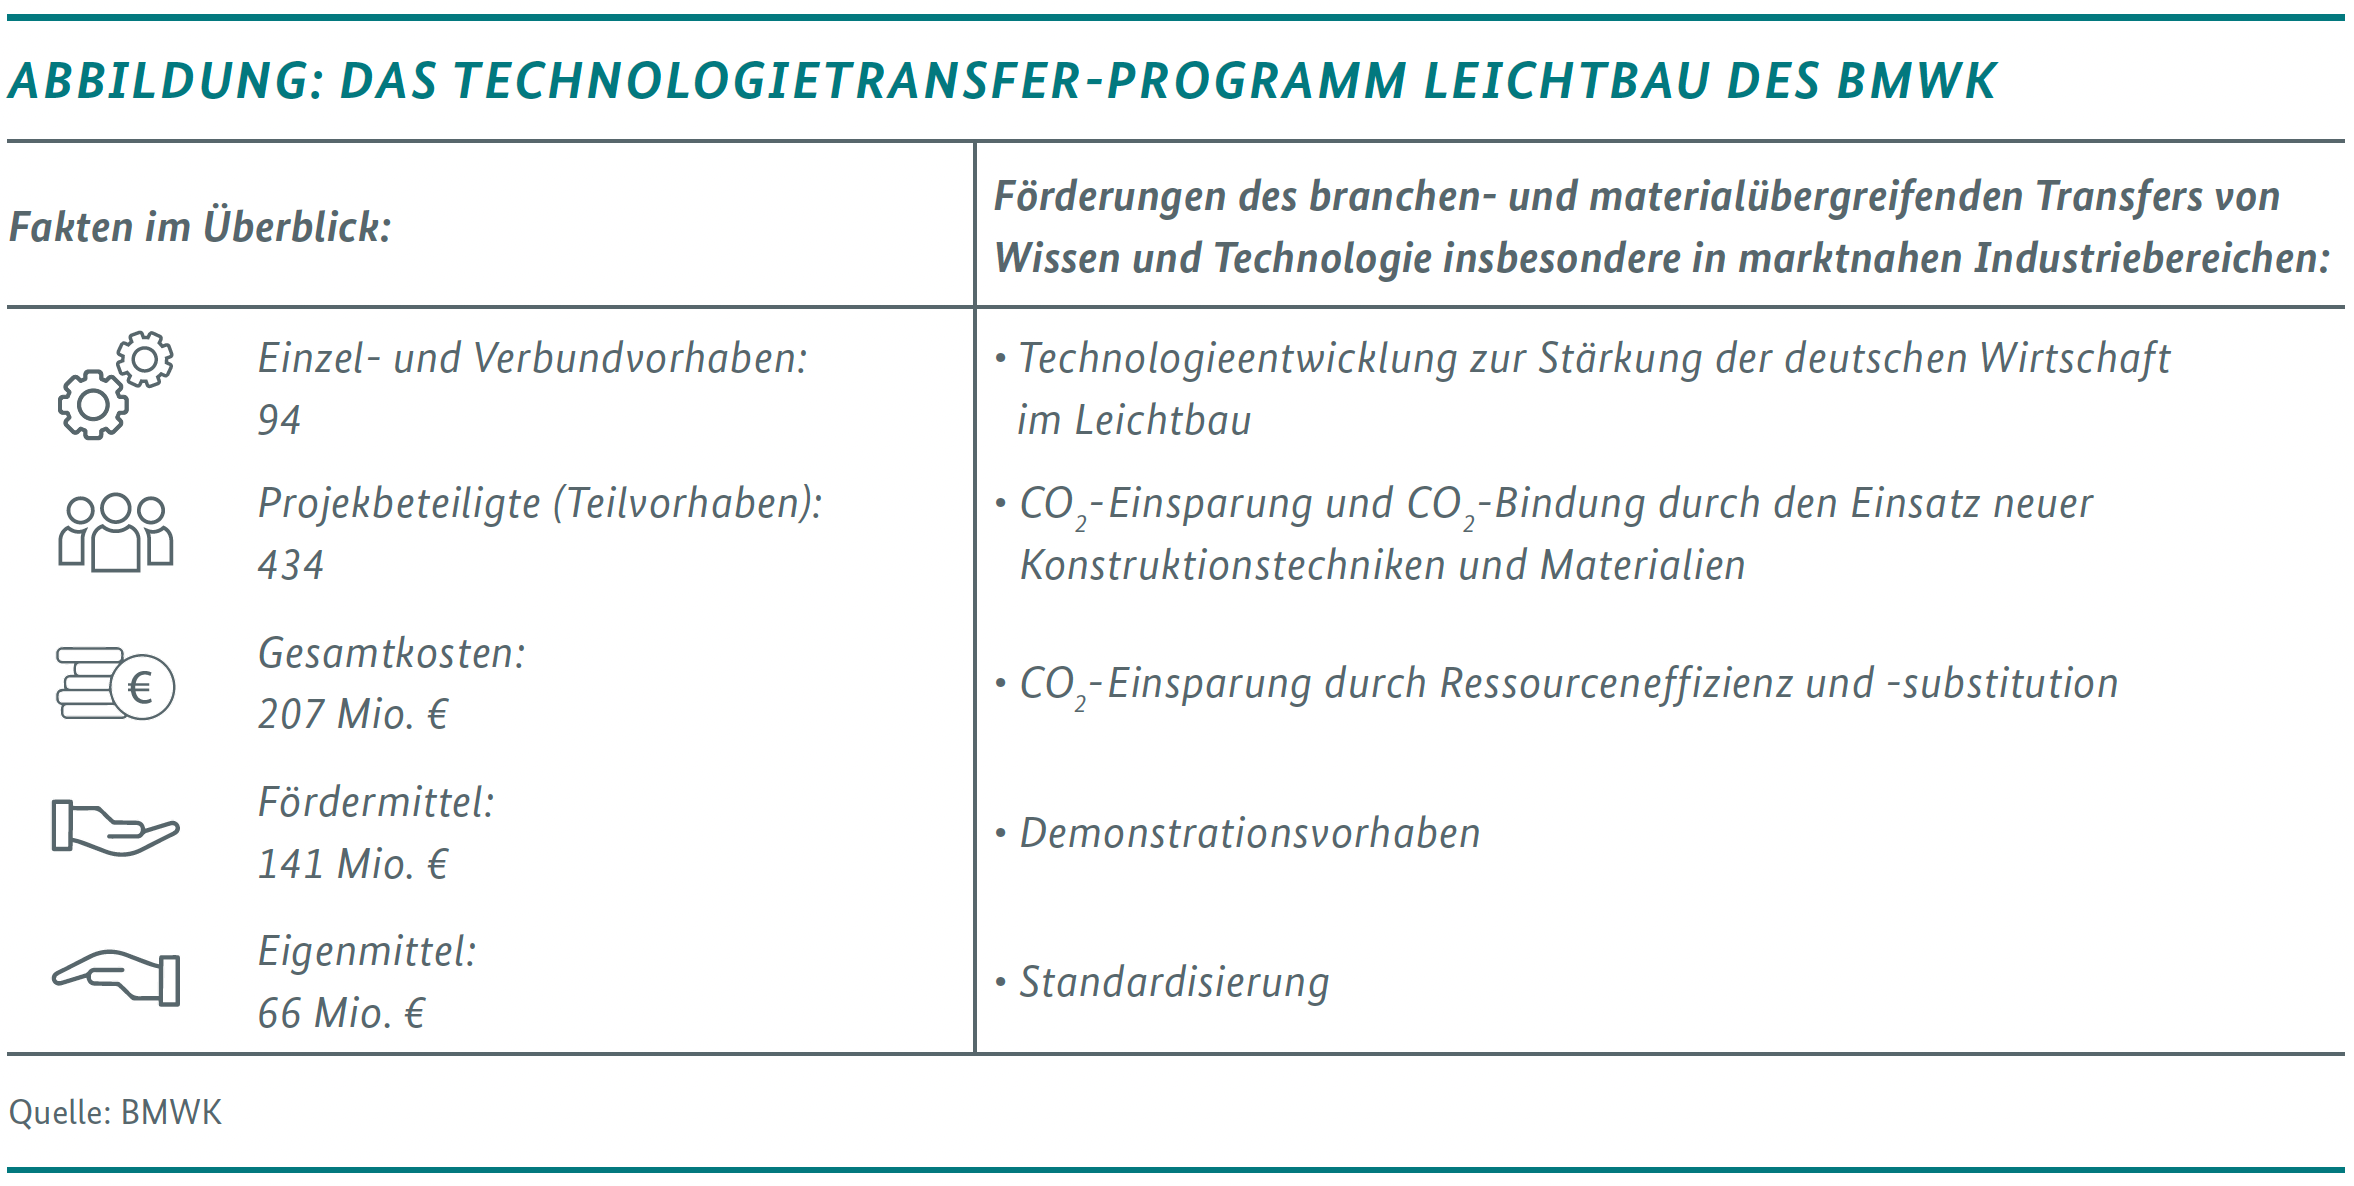 Abbildung: Das Technologie-Transfer-Programm Leichtbau des BMWK